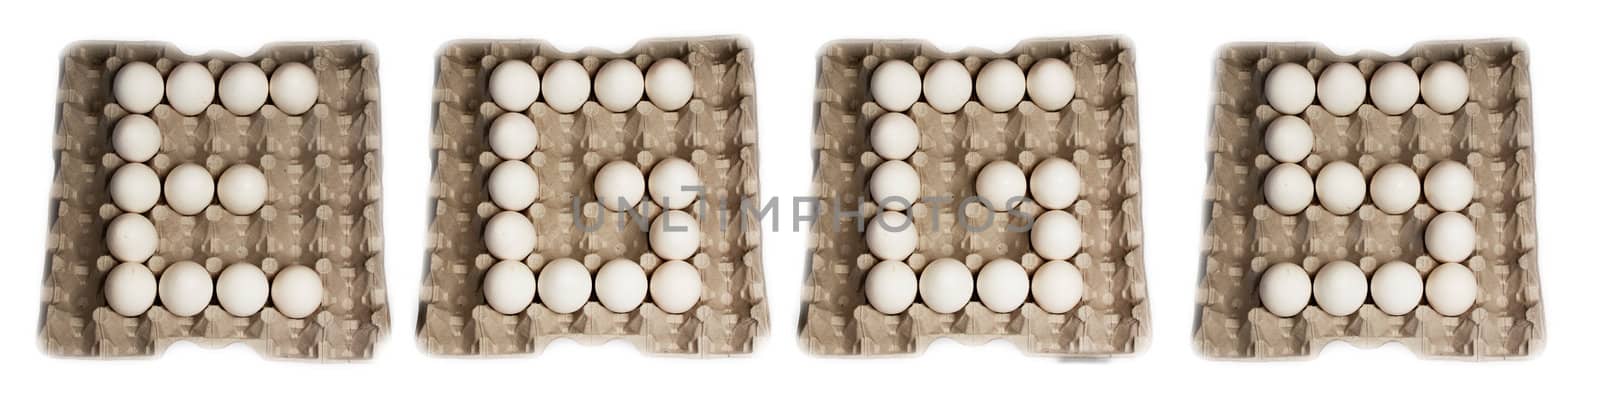 word eggs made of egg alphabet by esterio